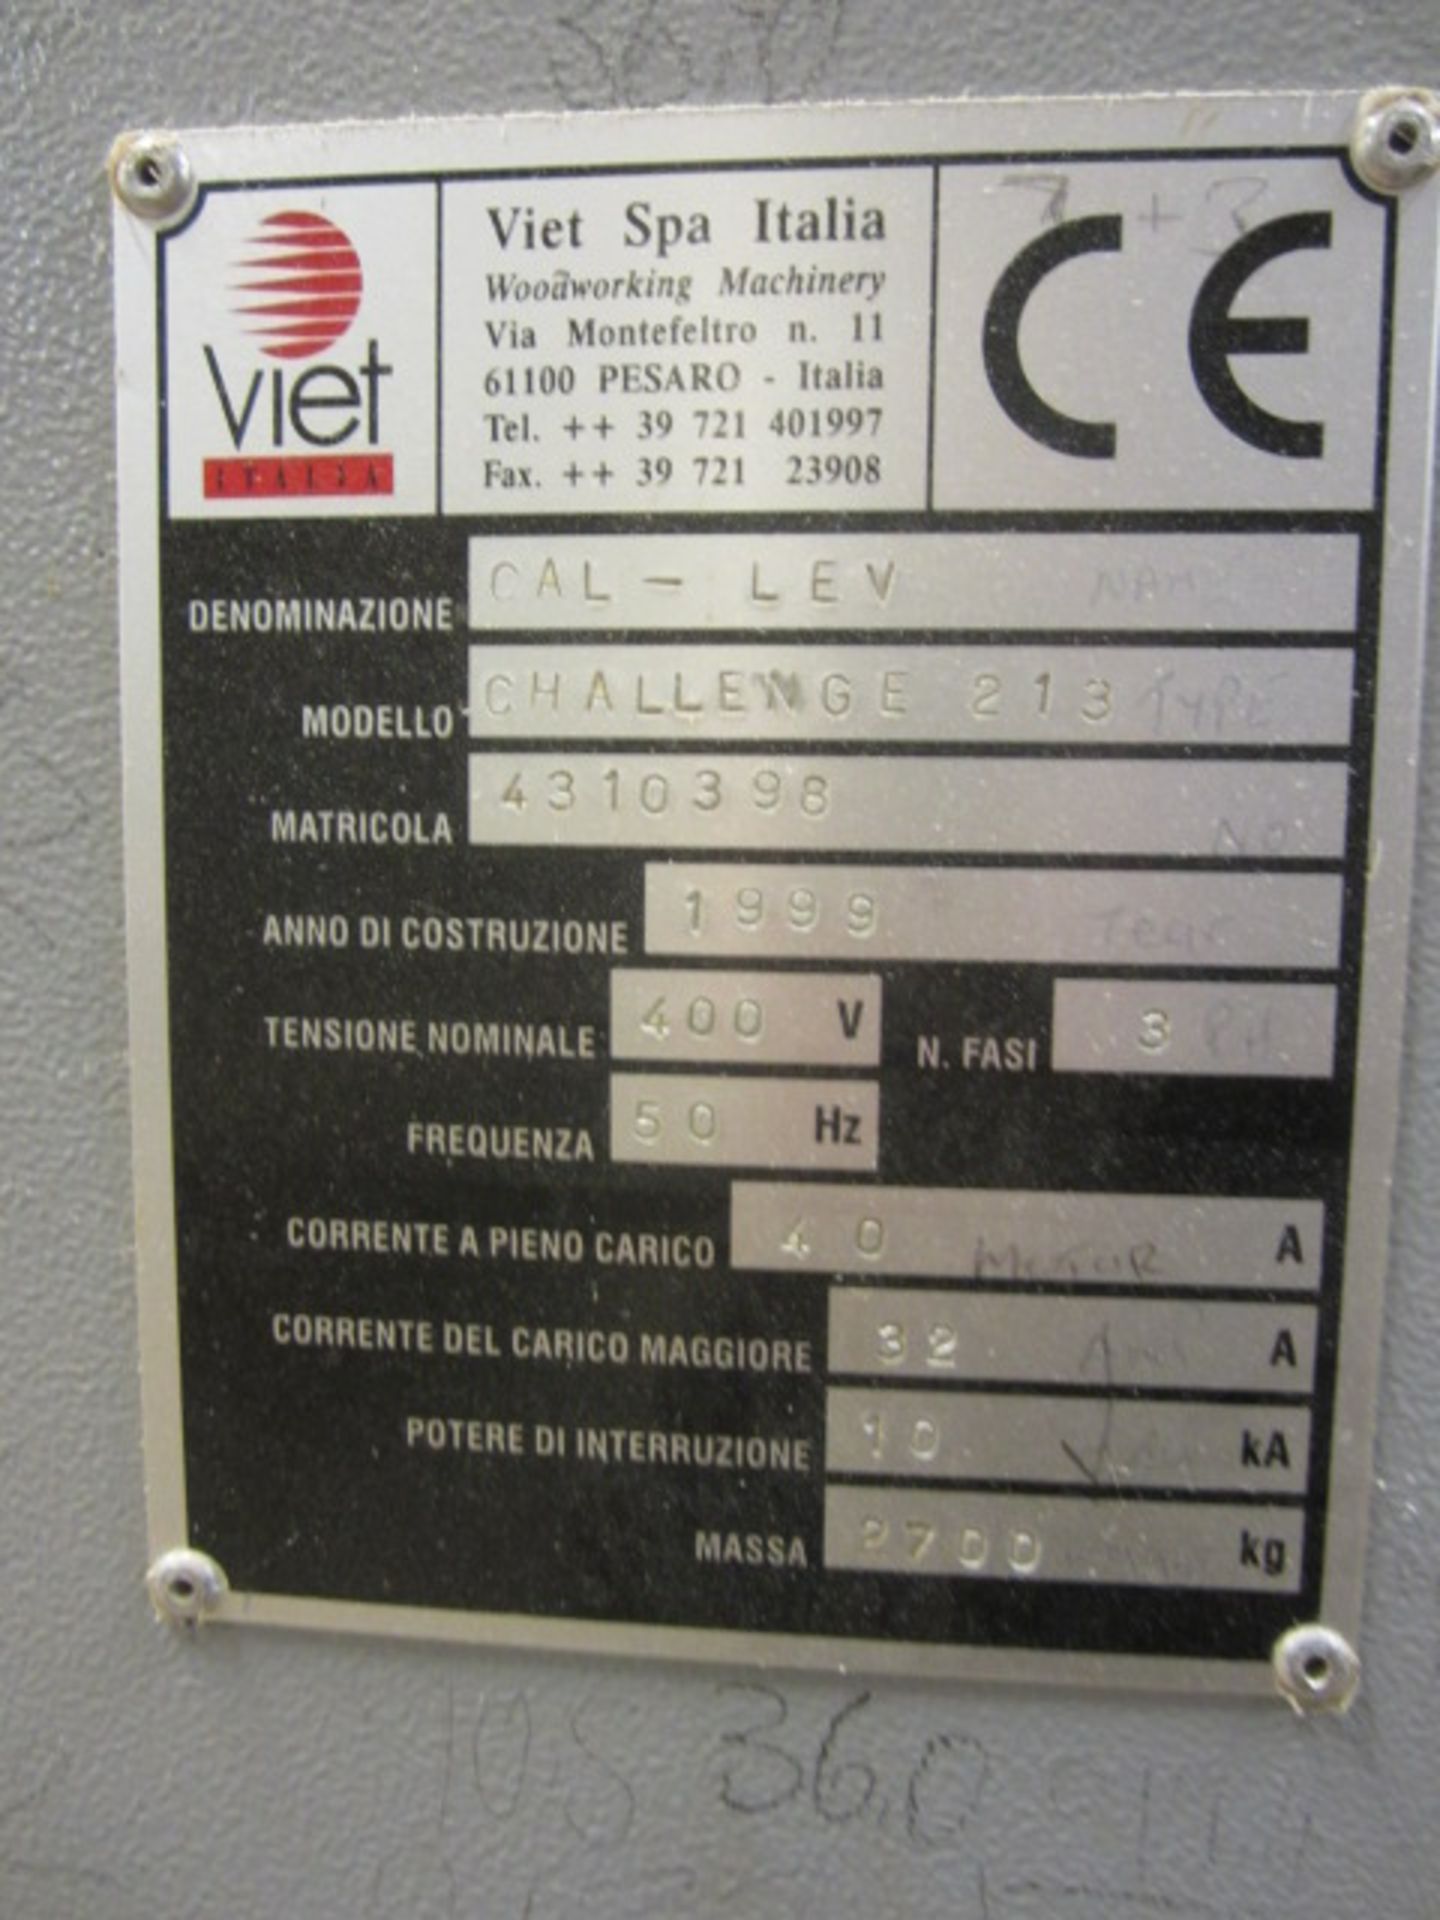 Viet Challenge 213 twin belt drum sander, serial no: 41310398 (1999), 1350mm width, Viet Synoptic - Image 3 of 7